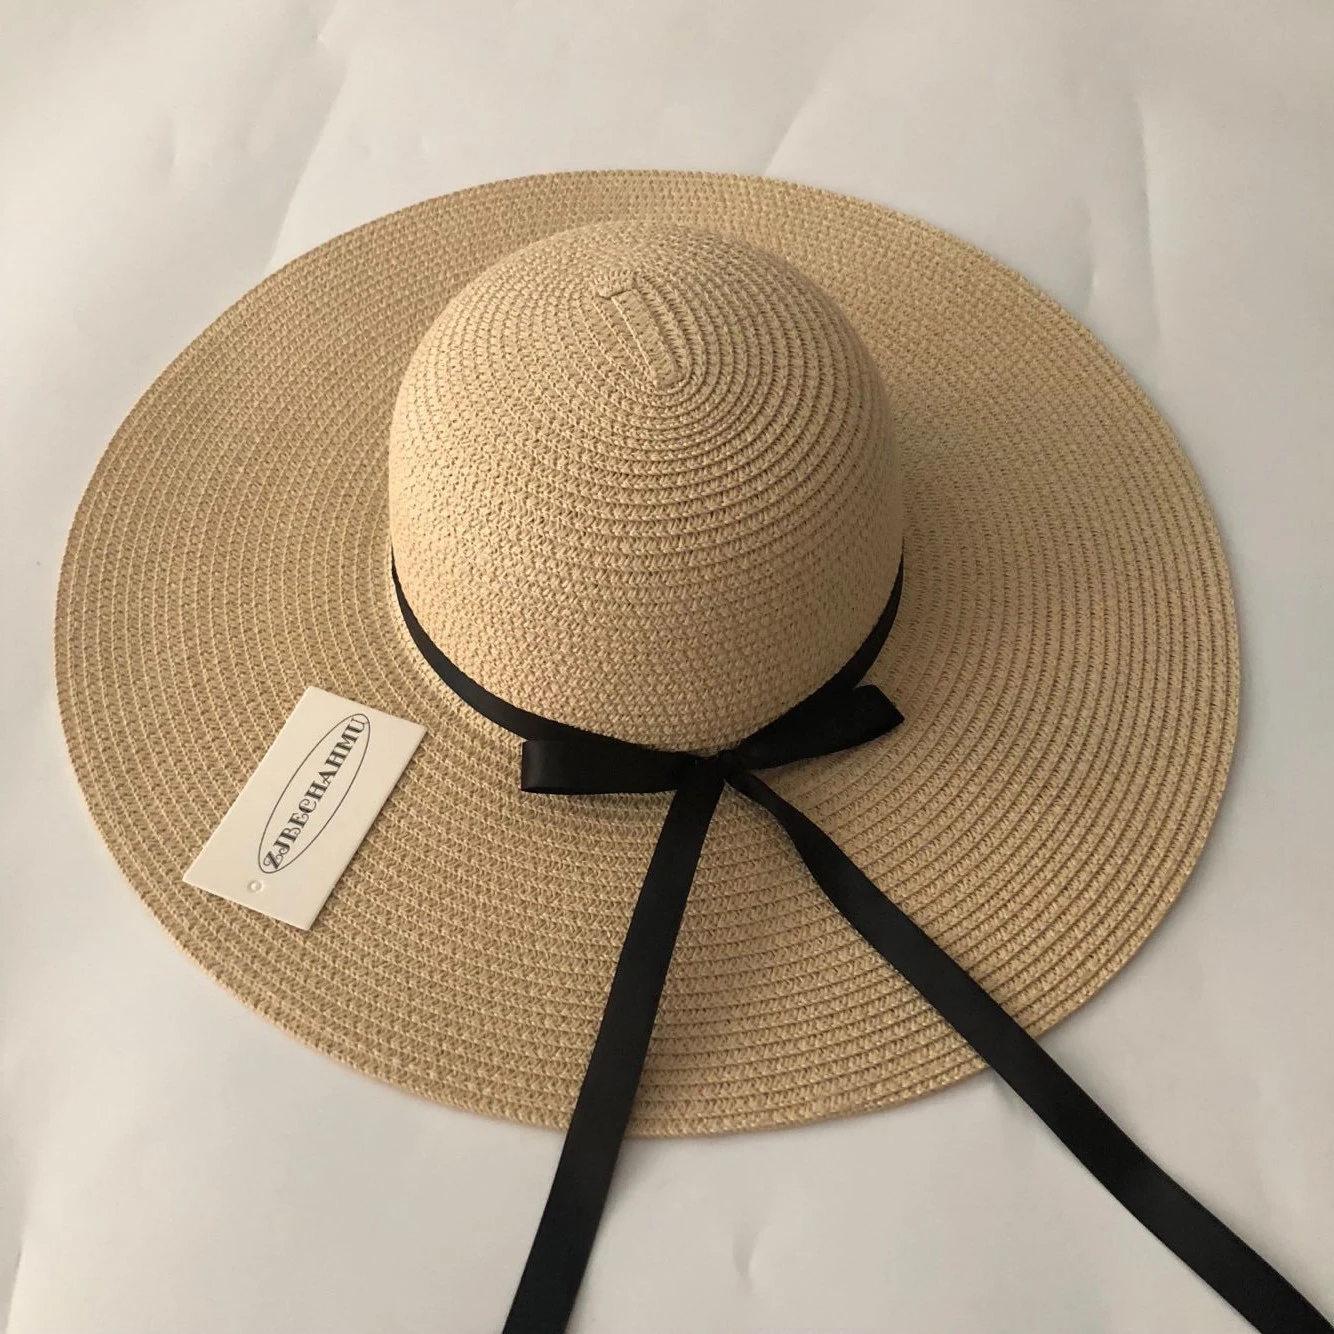 Летняя Новинка, соломенные шляпы с широкими большими полями, шляпа от солнца для женщин, Панама с защитой от ультрафиолета, пляжные шляпы, женская шляпа с бантом, женская шляпа, ete - Цвет: Бежевый